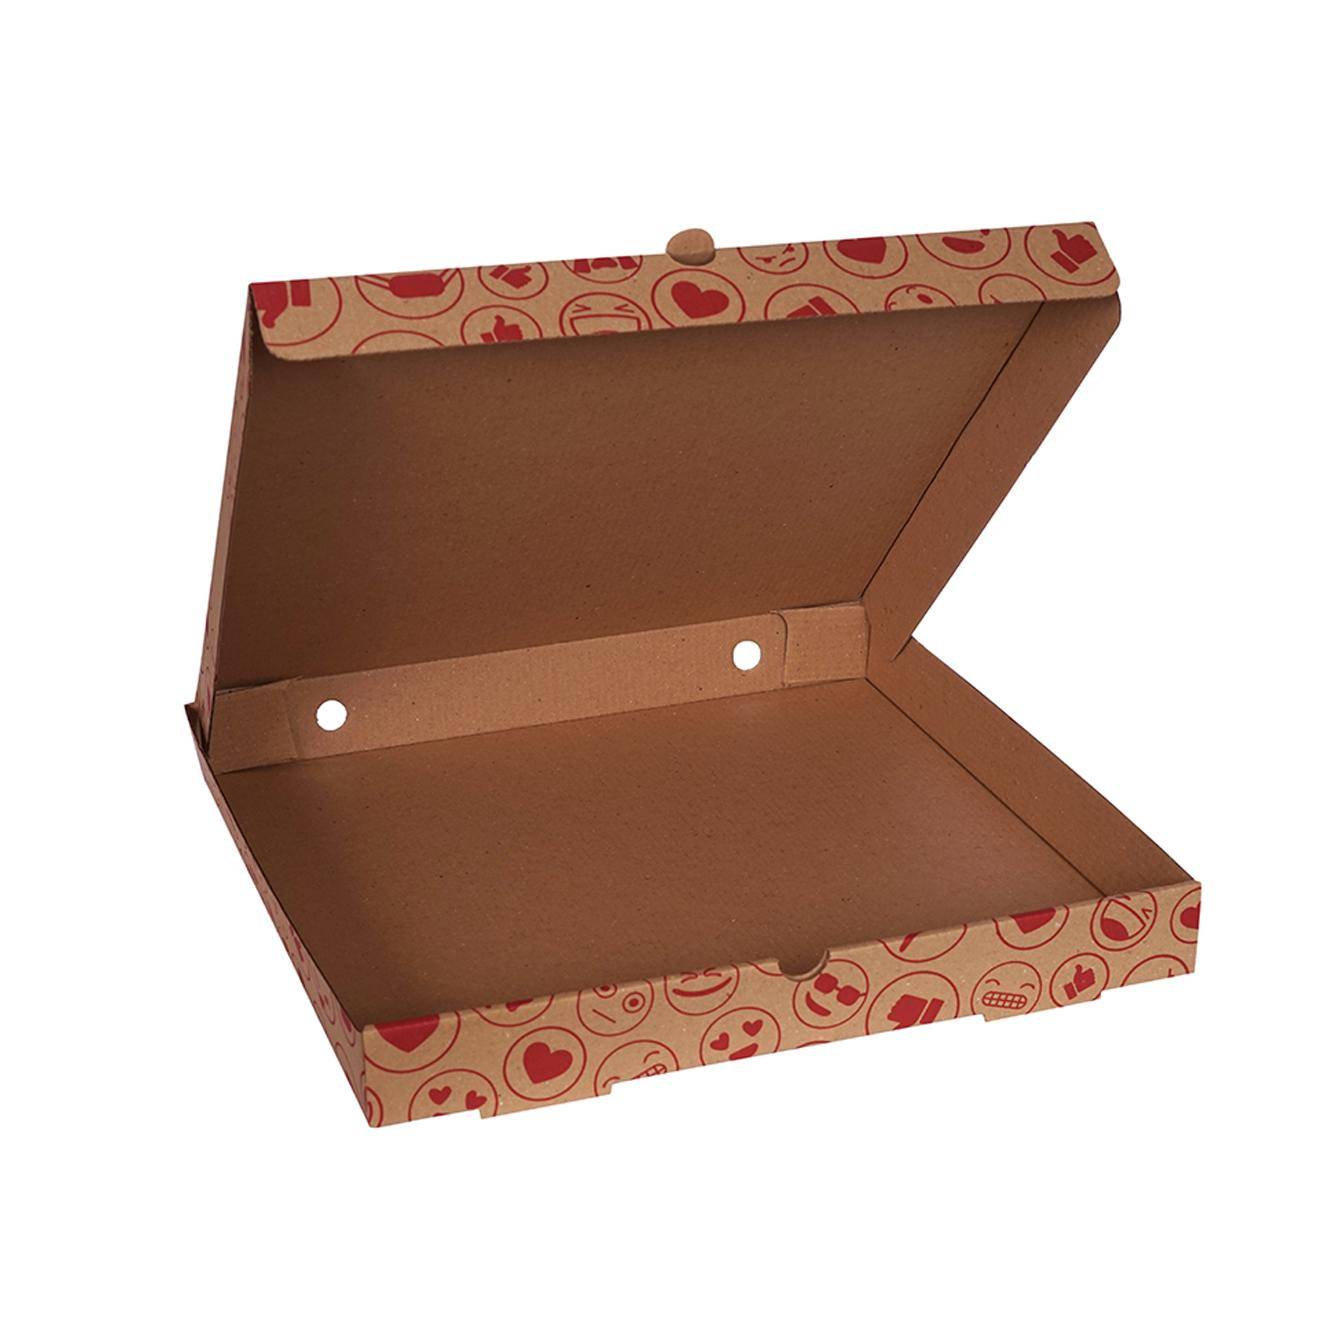 Emoji Baskılı Pizza Kutusu 24 cm 24x24x4 cm Kuzey Kutu